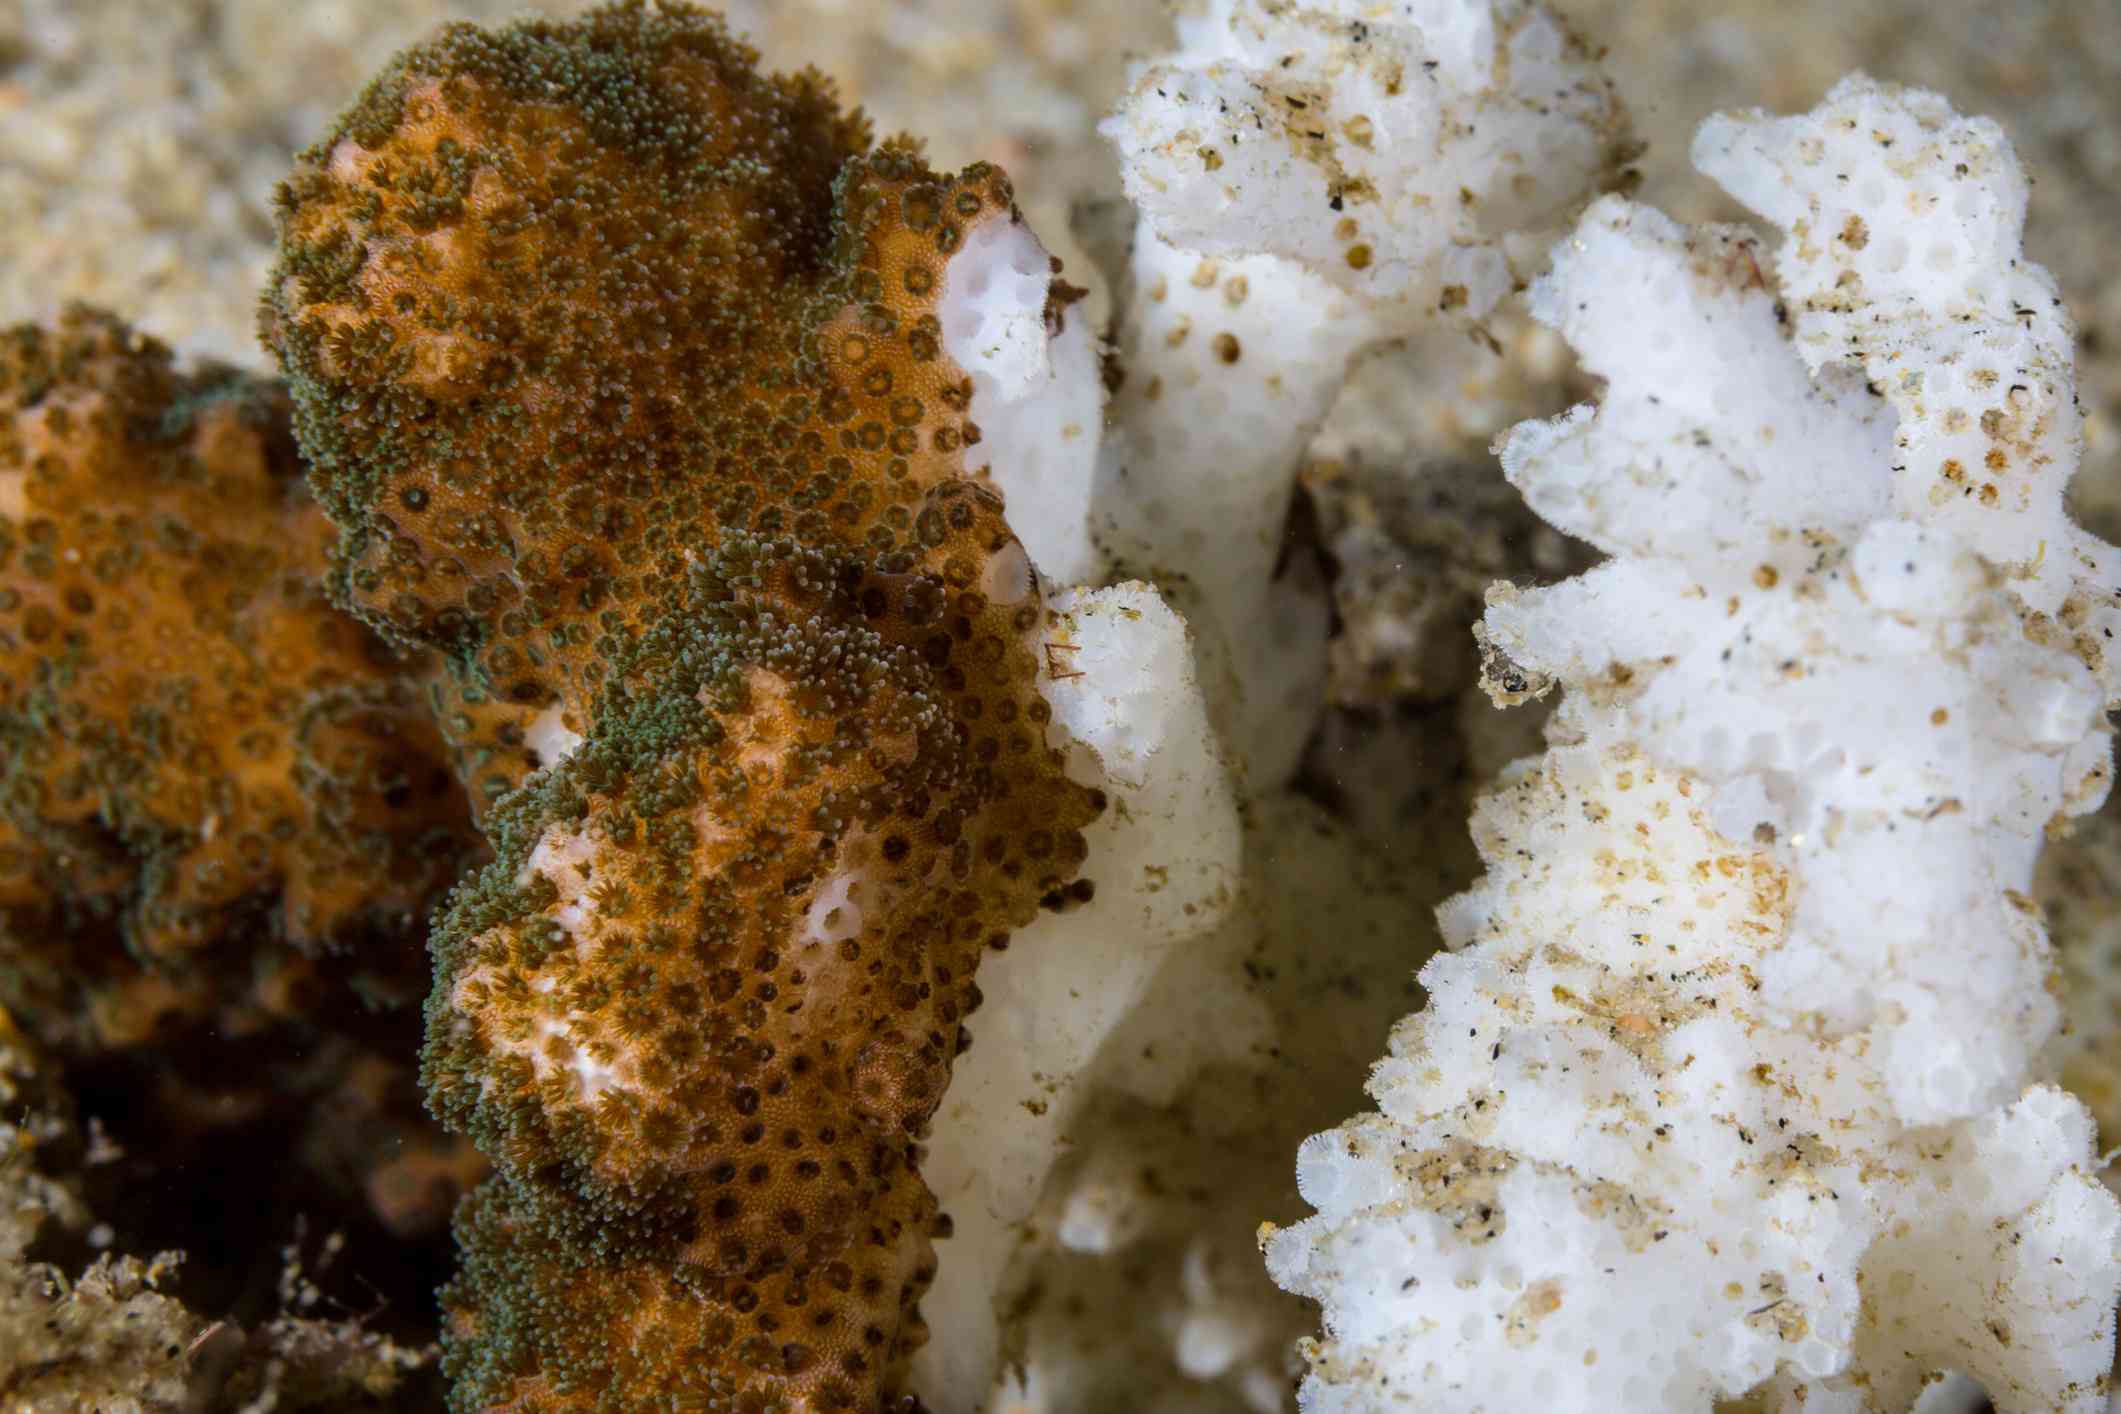 Imagen de un trozo de coral con sus colores intactos junto a un coral que se ha blanqueado, revelando sólo el esqueleto blanco brillante del coral.